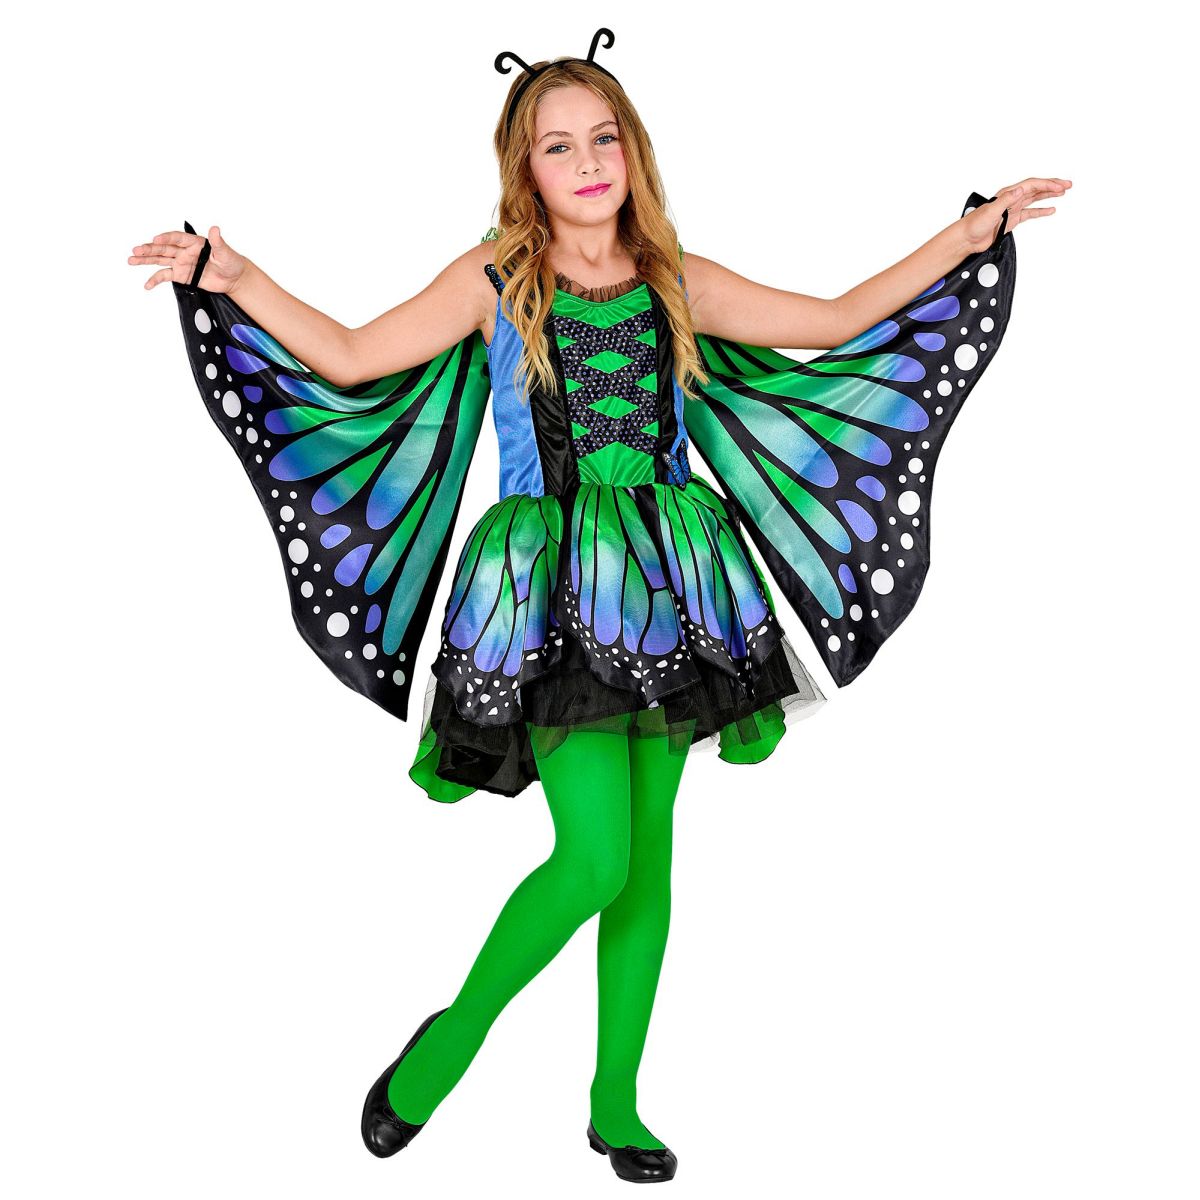 Schmetterling Kinderkostüm Kleid mit Tutu, Flügel, Antennen